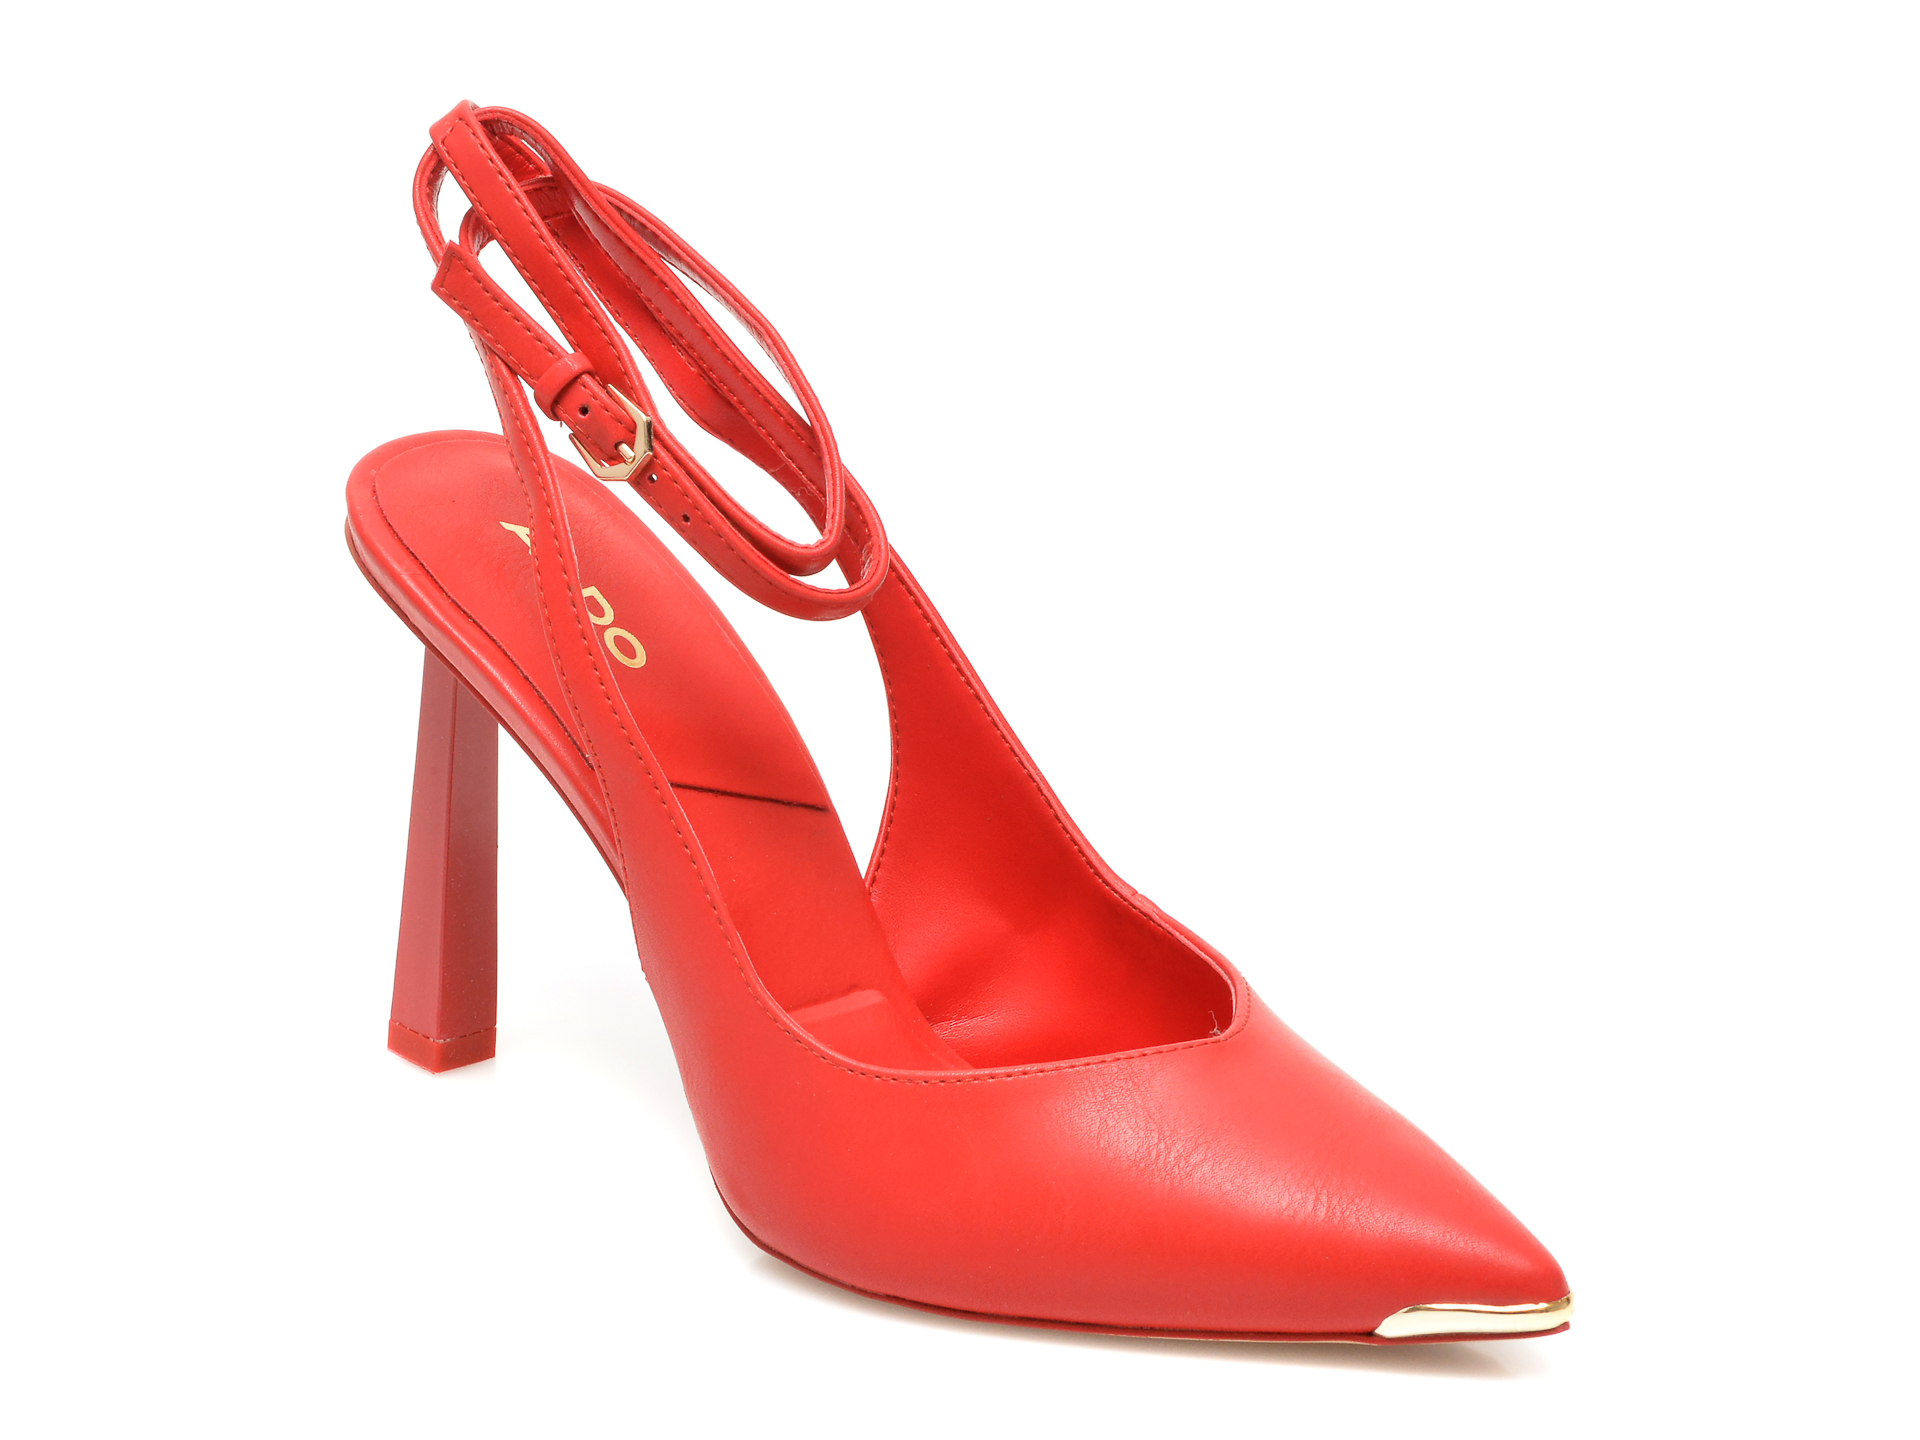 Pantofi ALDO rosii, ISABELA600, din piele ecologica Aldo imagine reduceri